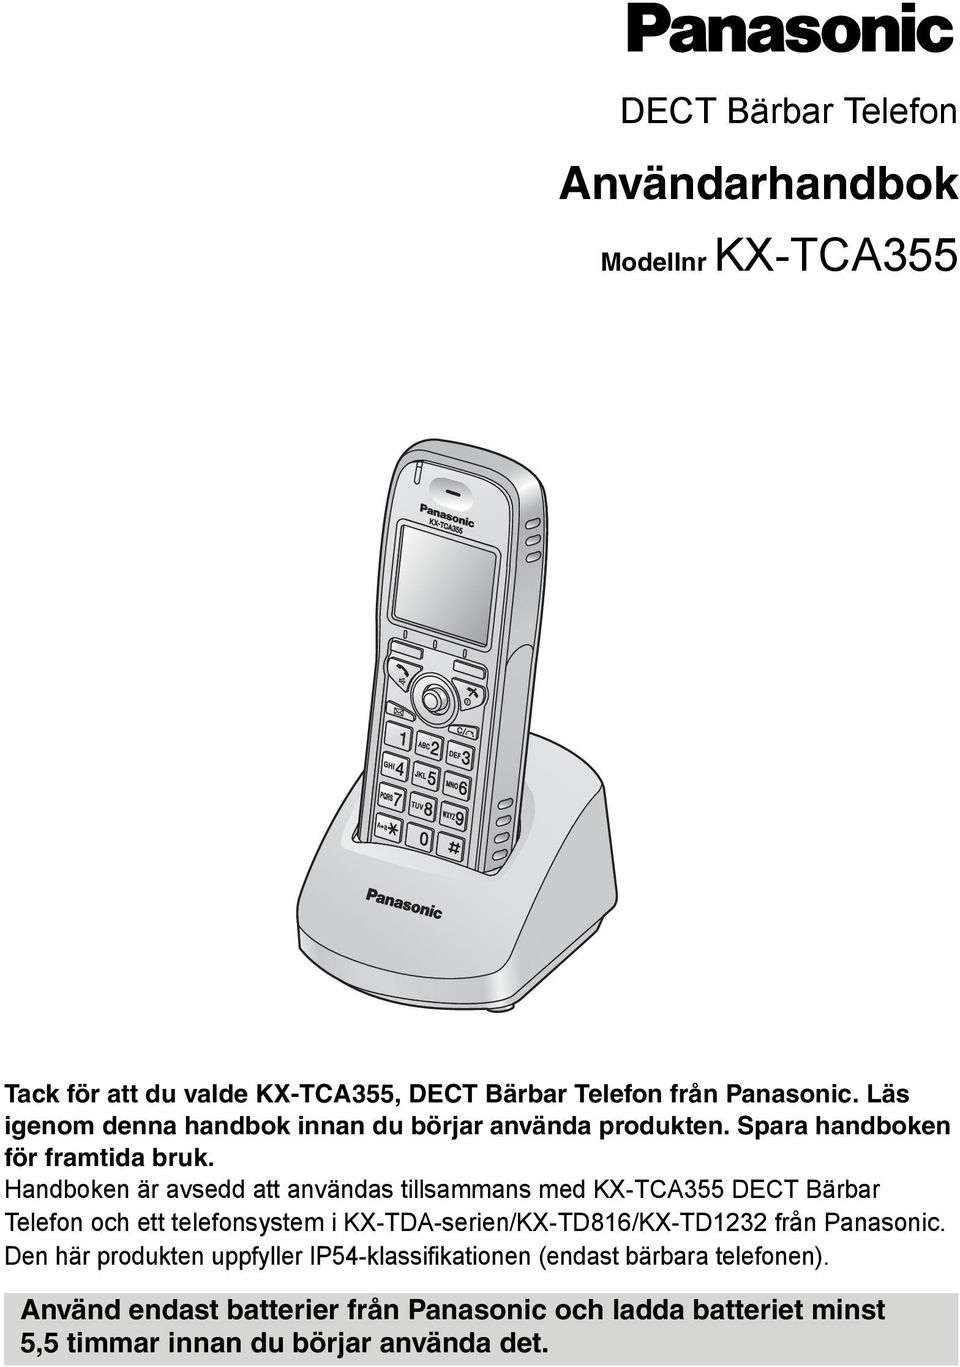 Handboken är avsedd att användas tillsammans med KX-TCA355 DECT Bärbar Telefon och ett telefonsystem i KX-TDA-serien/KX-TD816/KX-TD1232